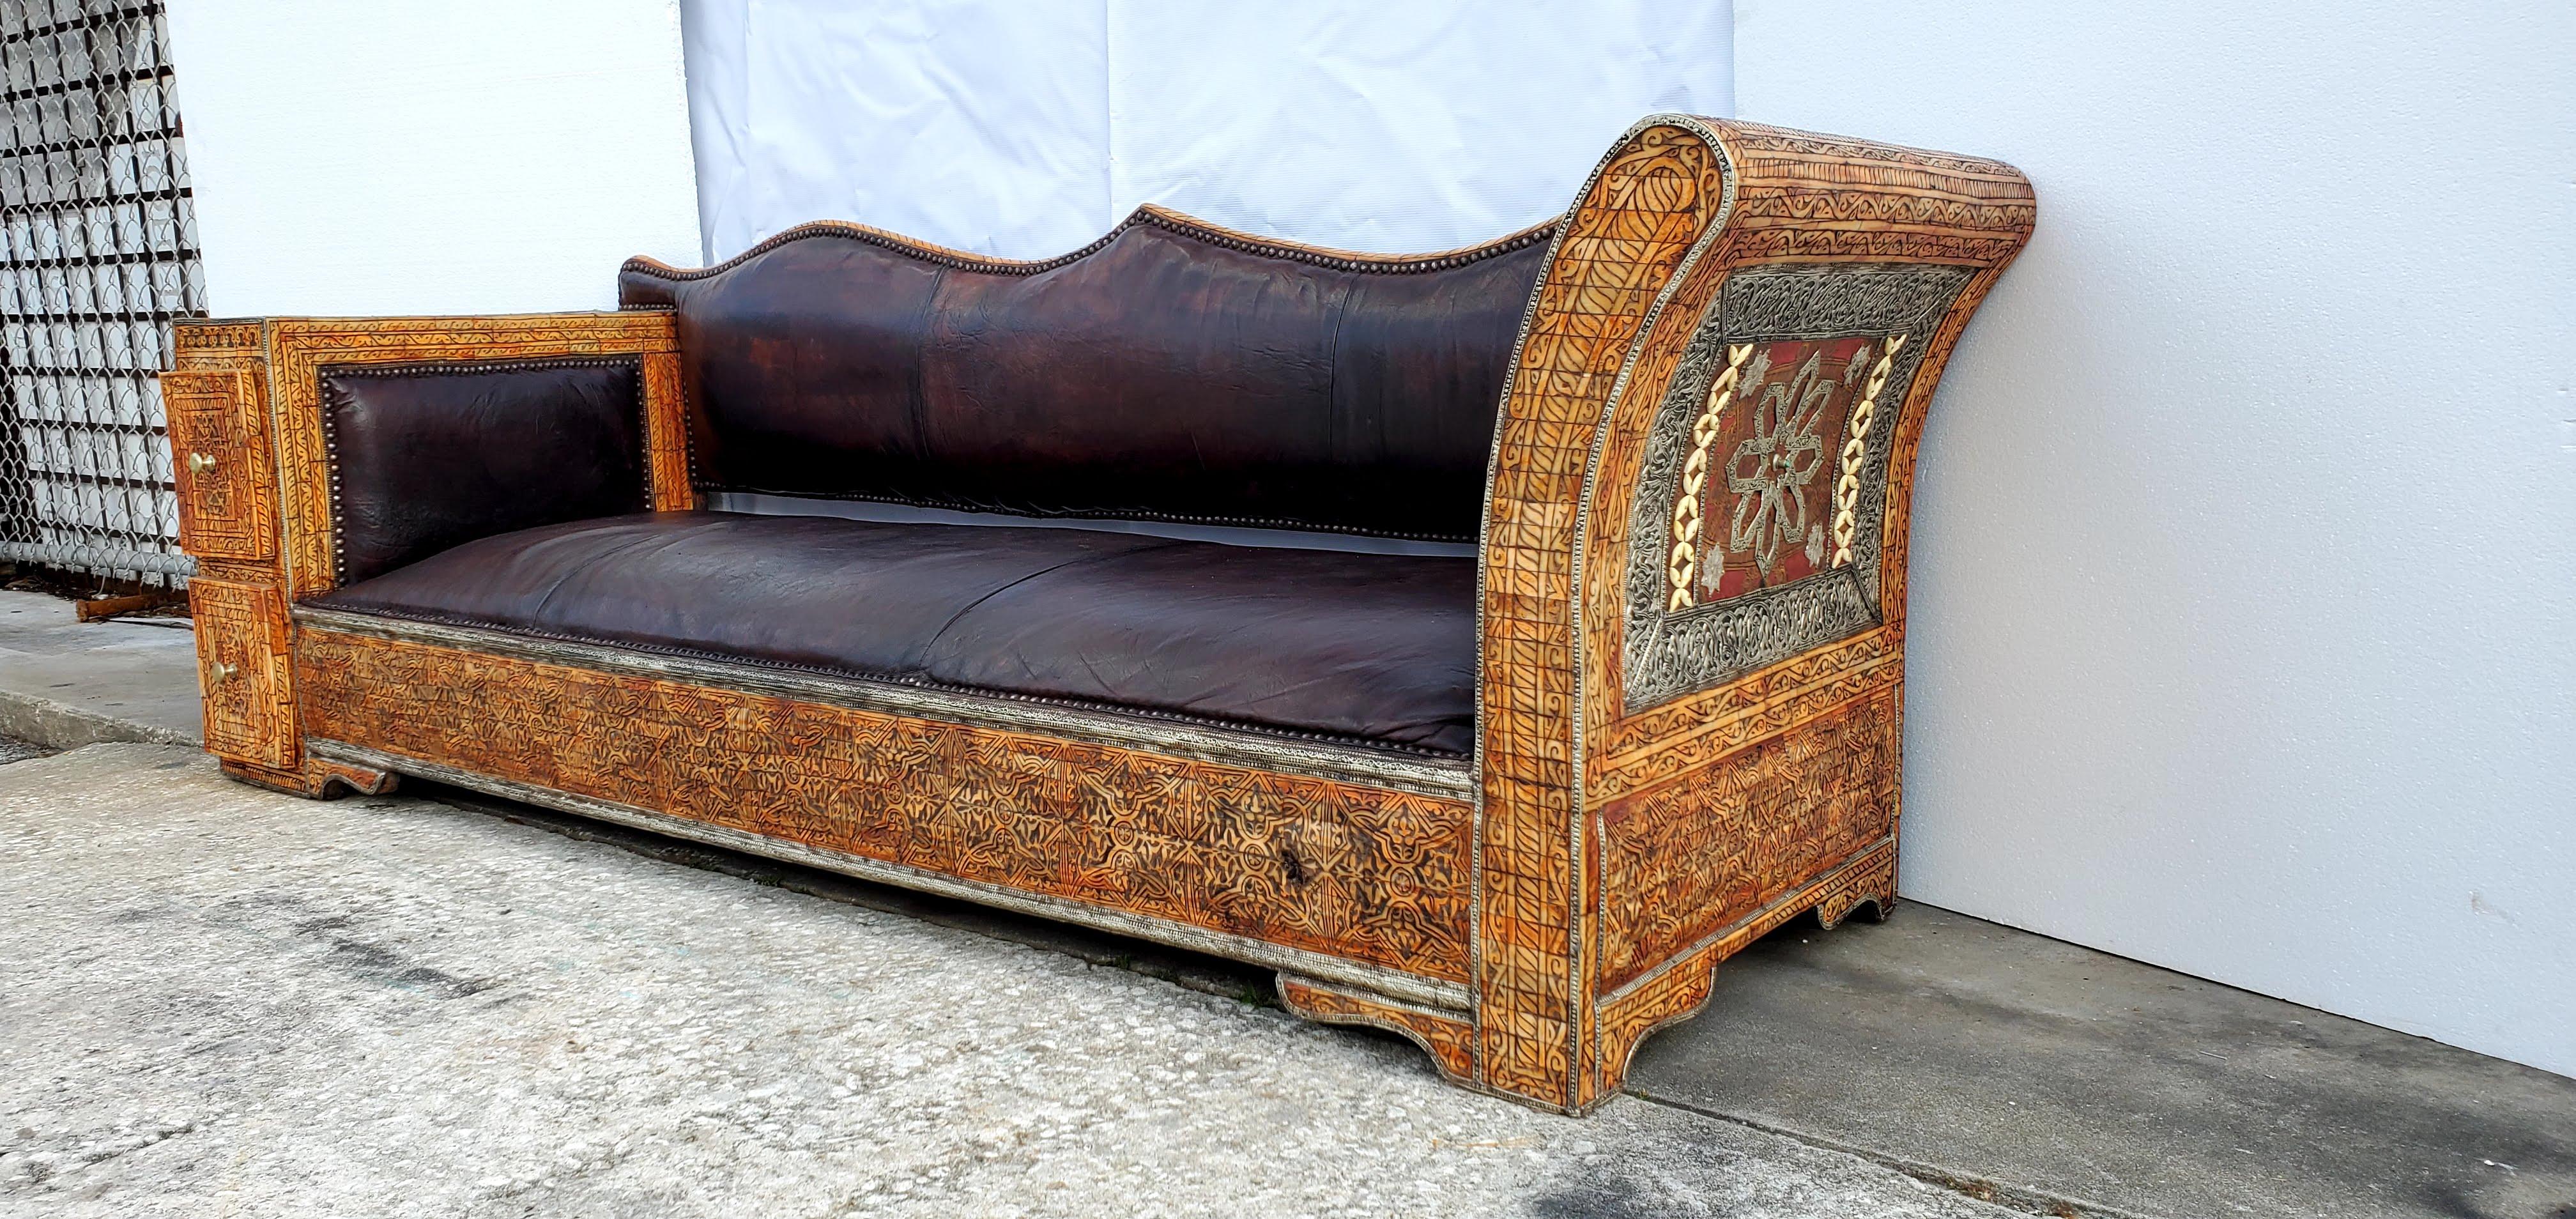 Bone Rare and Unique Moroccan Leather Sofa or Bench